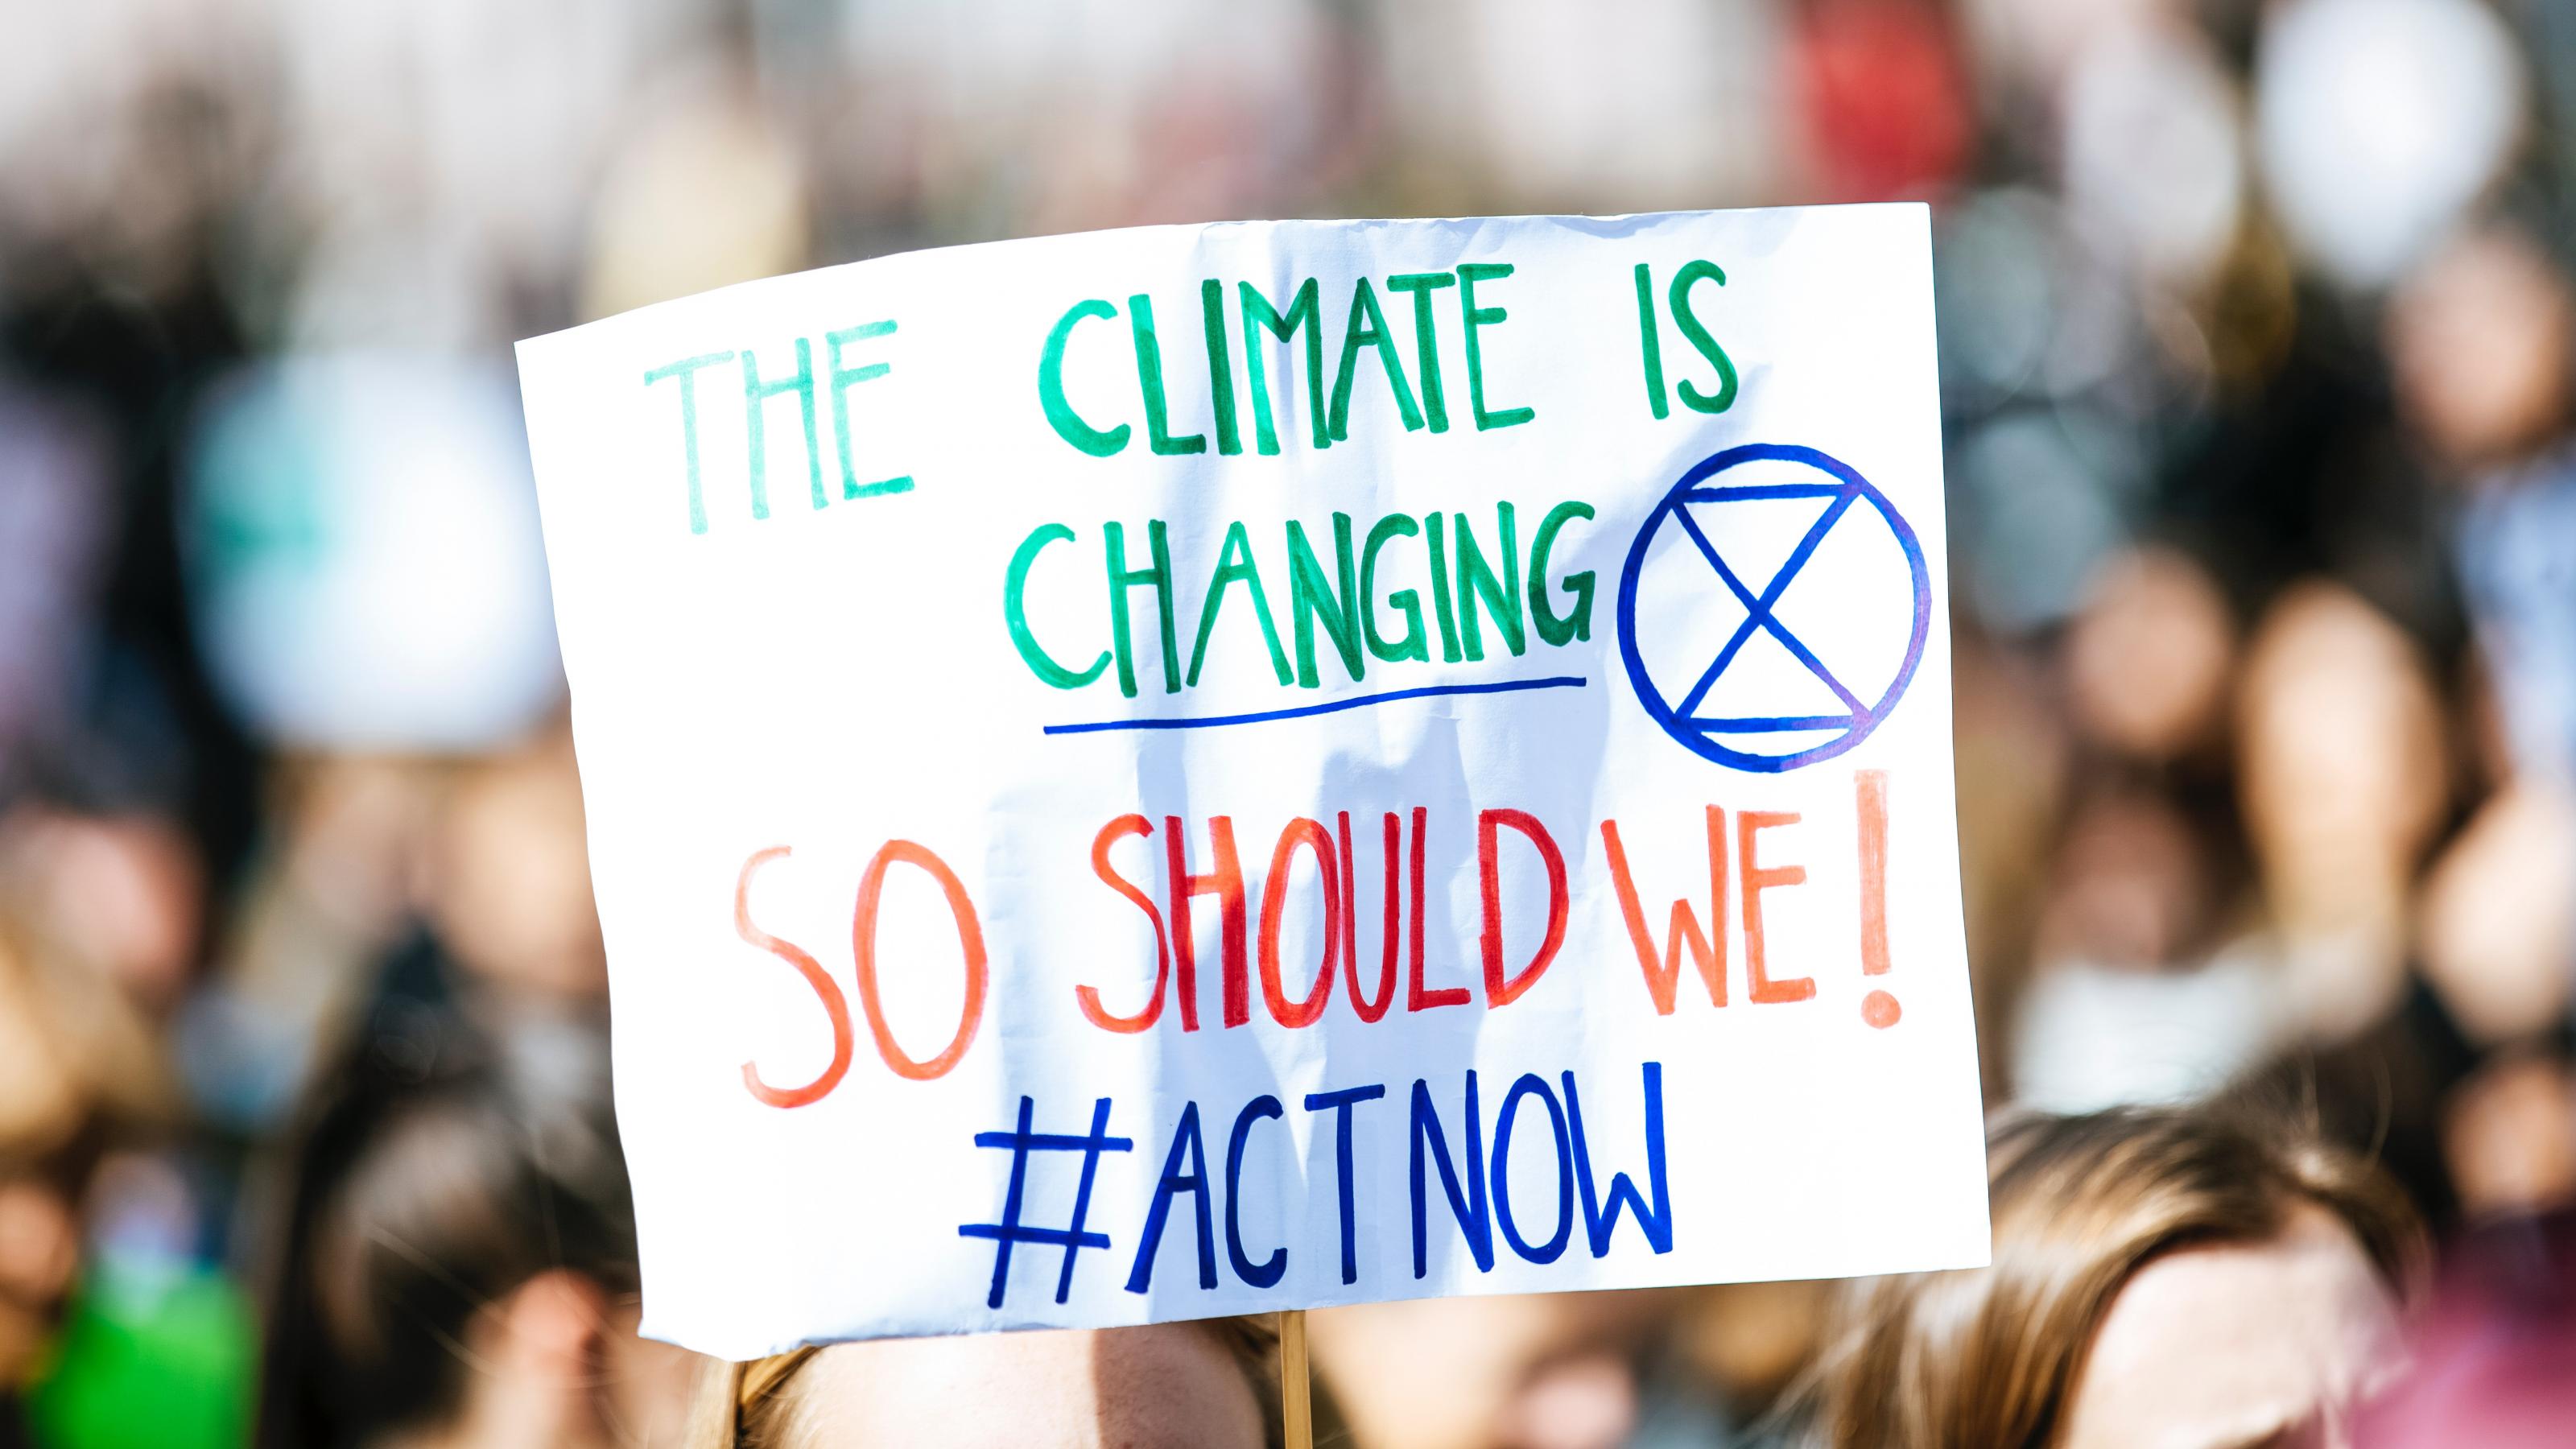 Demonstrierende halten ein Schild hoch auf dem steht: „The Climate is changing. So should we! #ActNow“